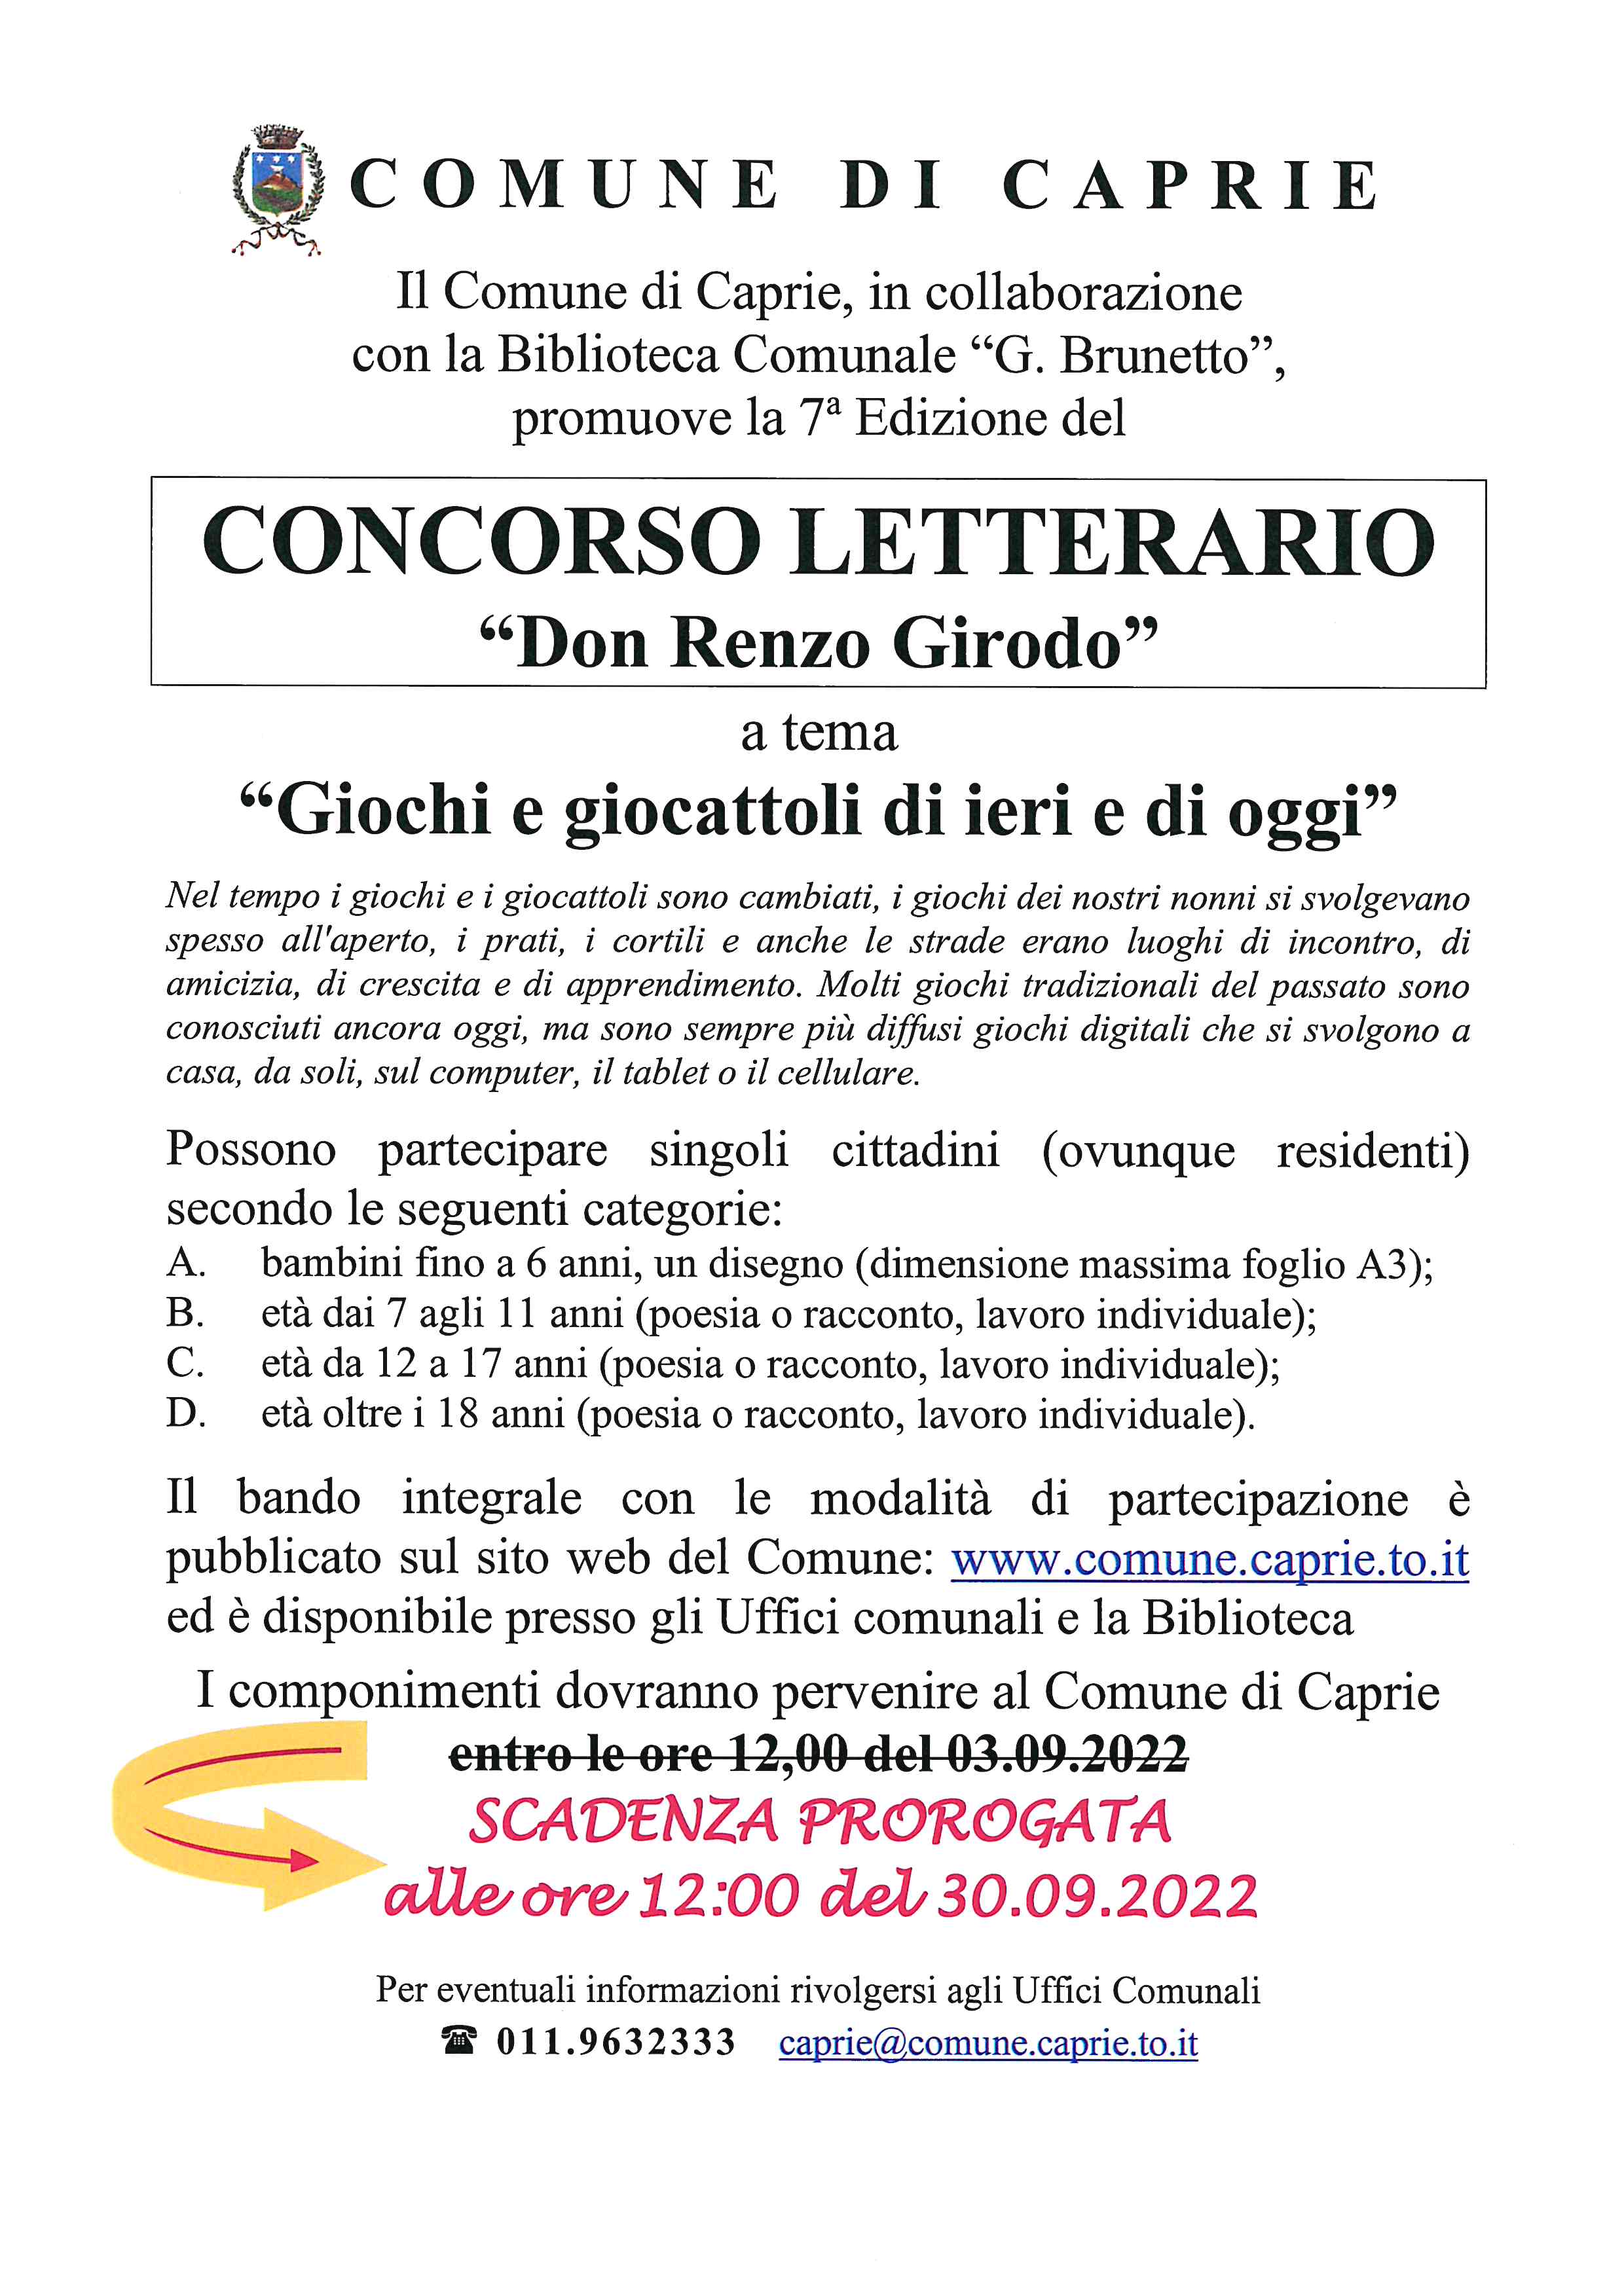 CONCORSO LETTERARIO DON RENZO GIRODO – VII EDIZIONE